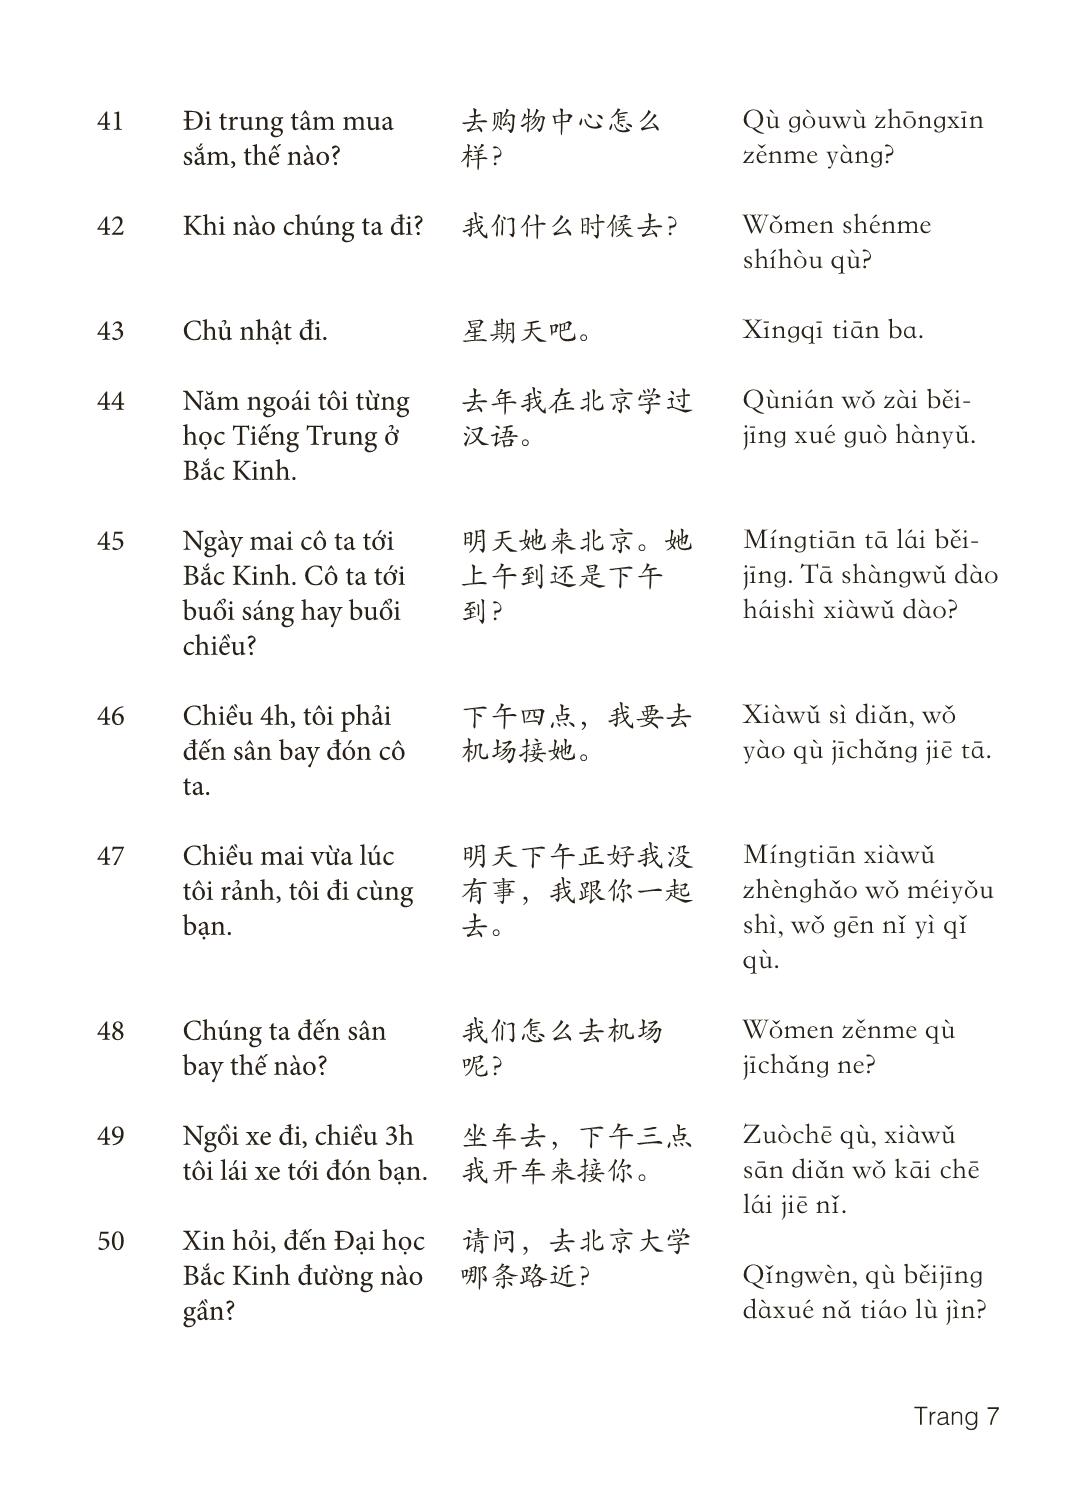 3000 Câu đàm thoại tiếng Hoa - Phần 16 trang 7